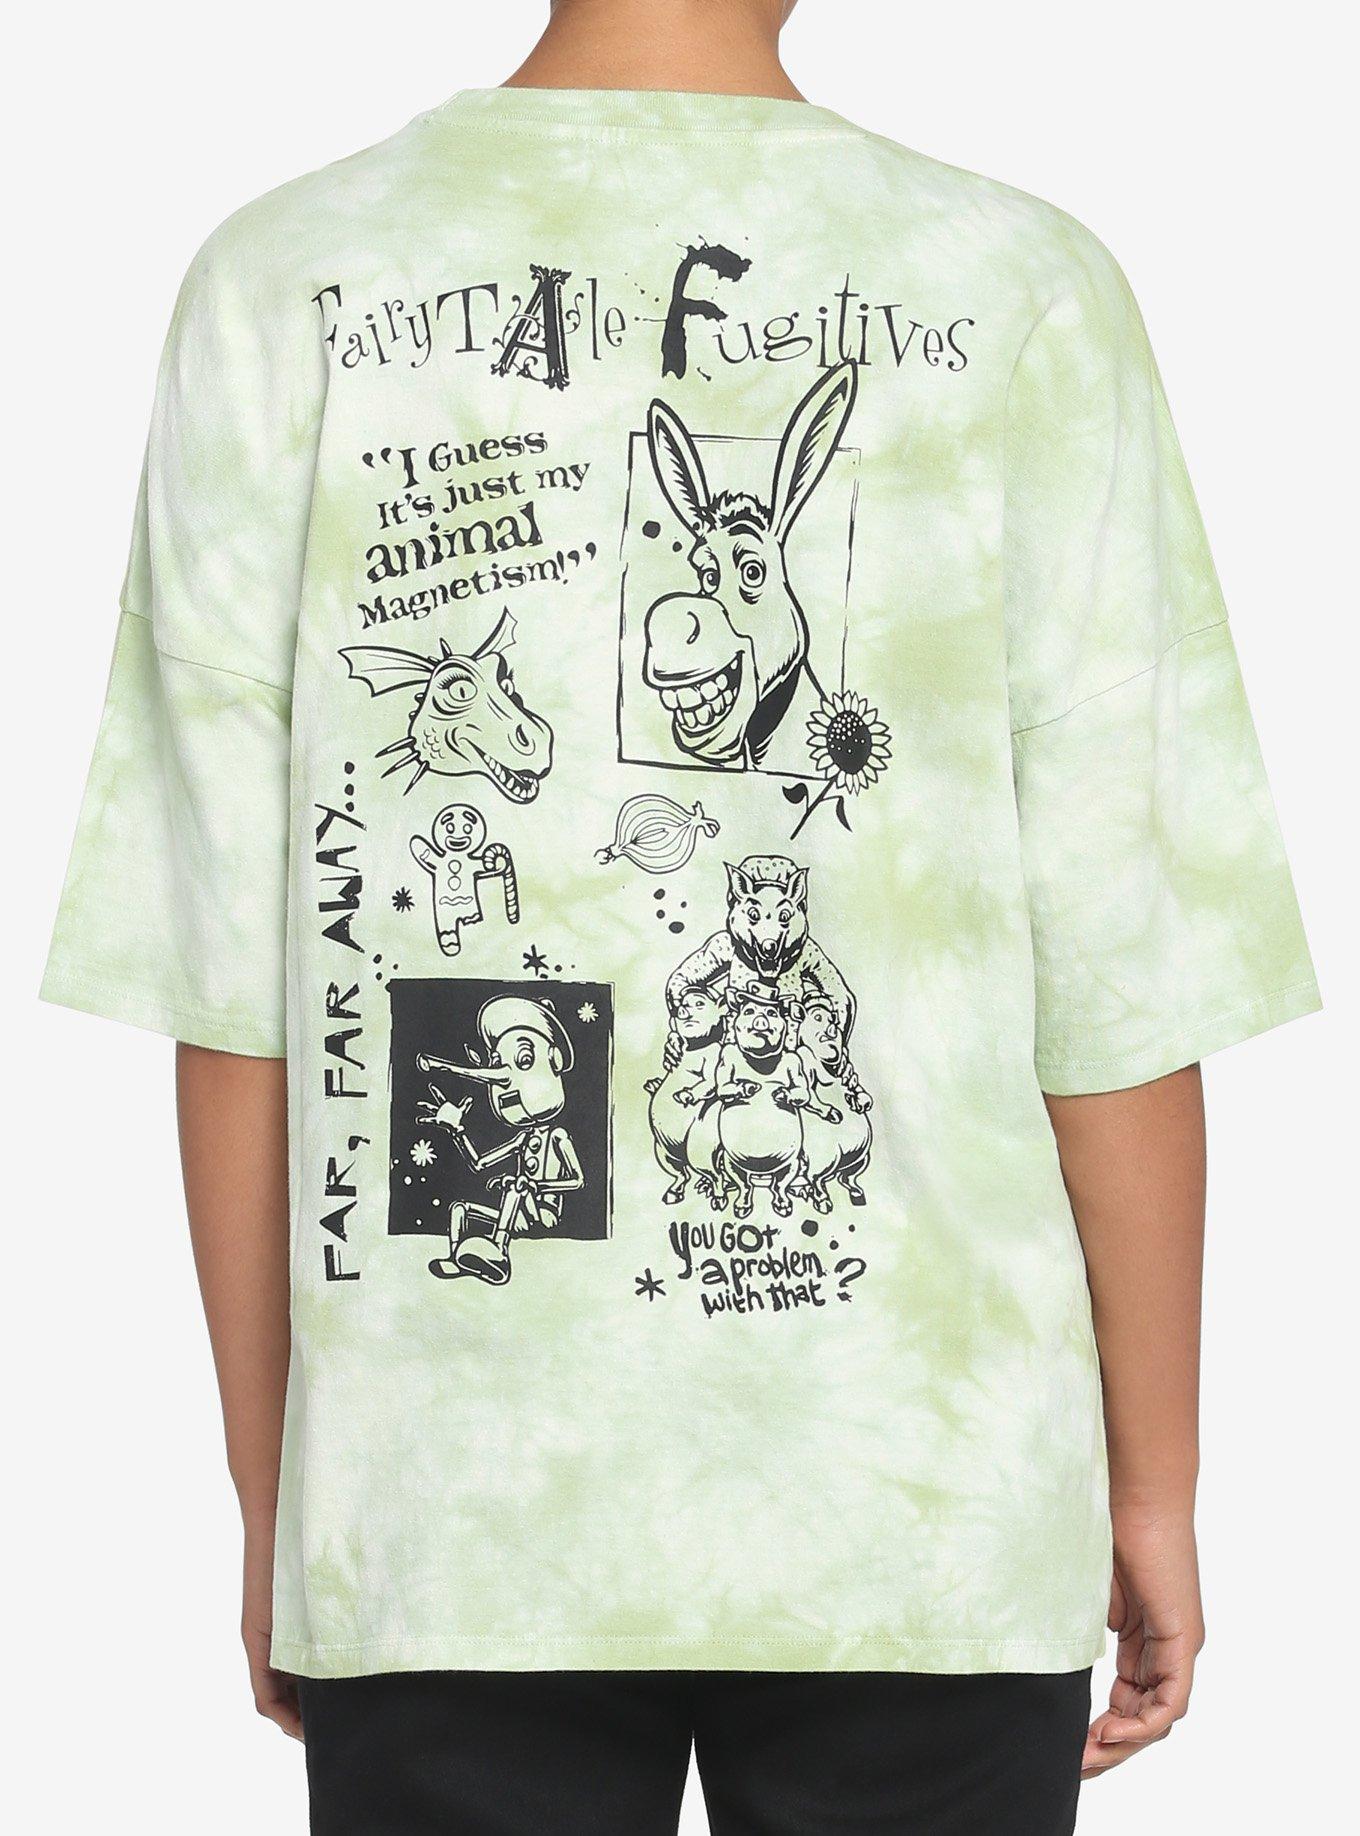 Shrek Fairytale Fugitives Tie-Dye Girls T-Shirt, BLACK, hi-res